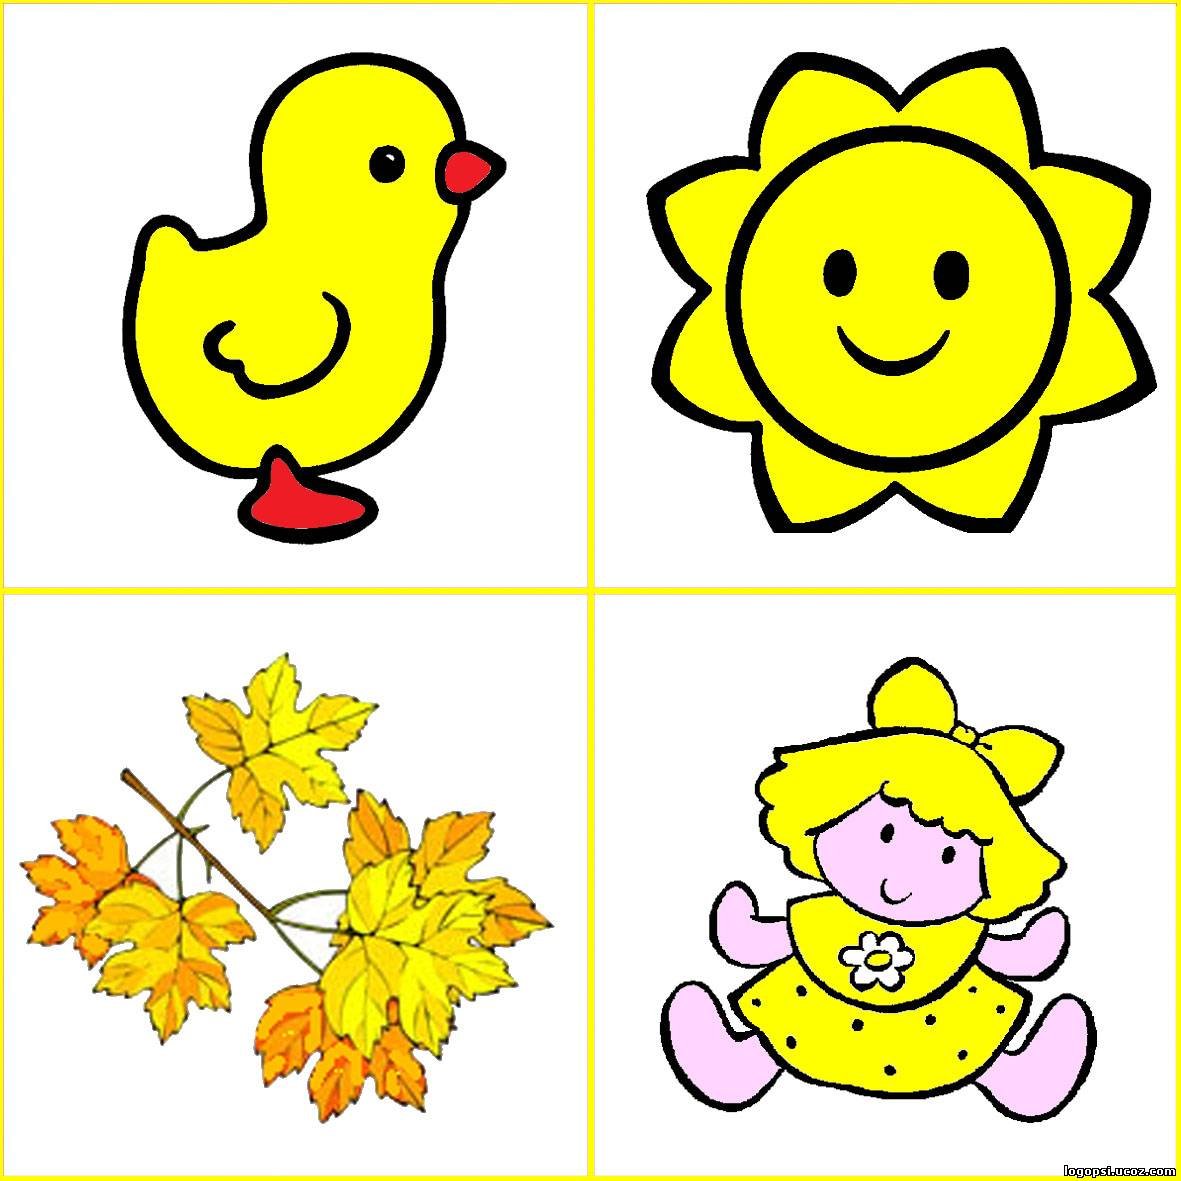 Цвета для детей 2 3 лет. Карточки цвета для дошкольников. Изучение цветов для детей. Цветовое лото для детей. Изучаем желтый цвет с малышами.